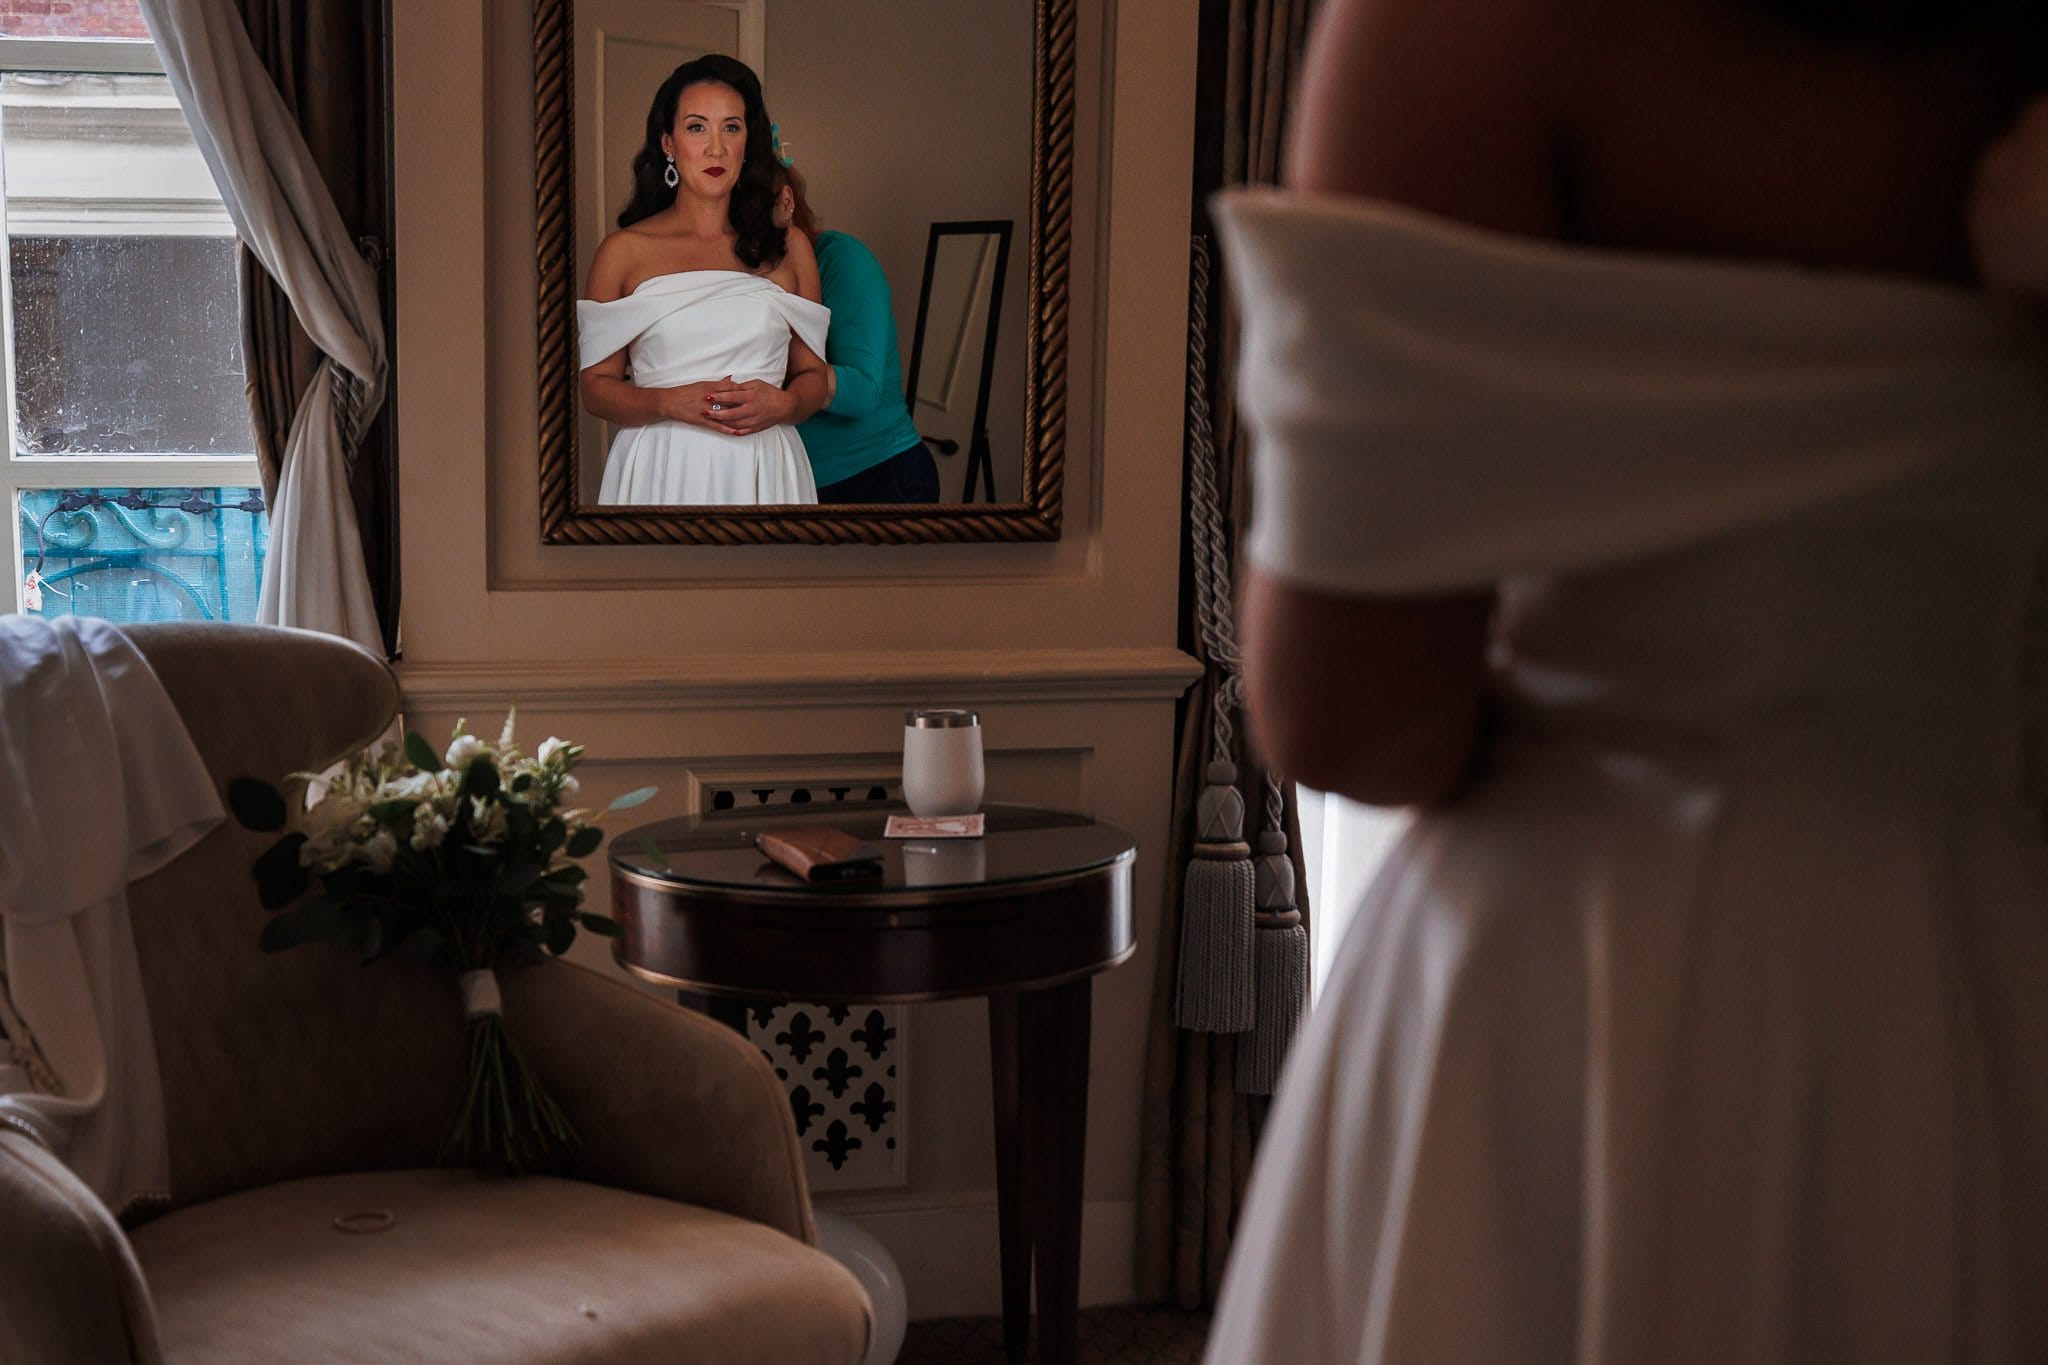 bride looking in mirror